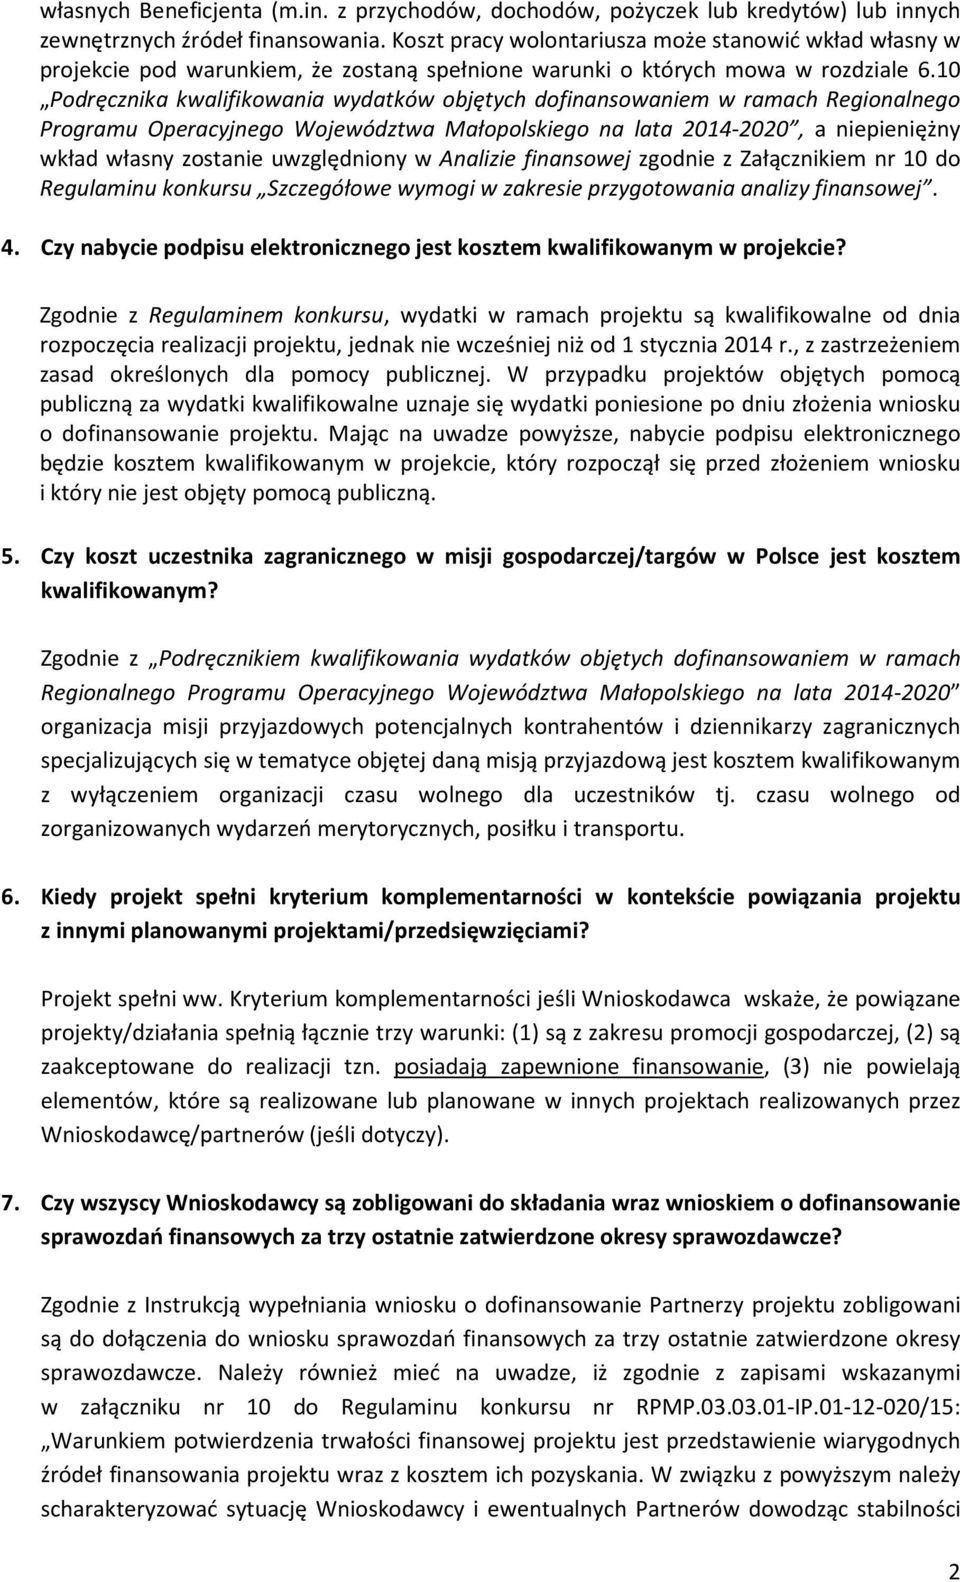 10 Podręcznika kwalifikowania wydatków objętych dofinansowaniem w ramach Regionalnego Programu Operacyjnego Województwa Małopolskiego na lata 2014-2020, a niepieniężny wkład własny zostanie